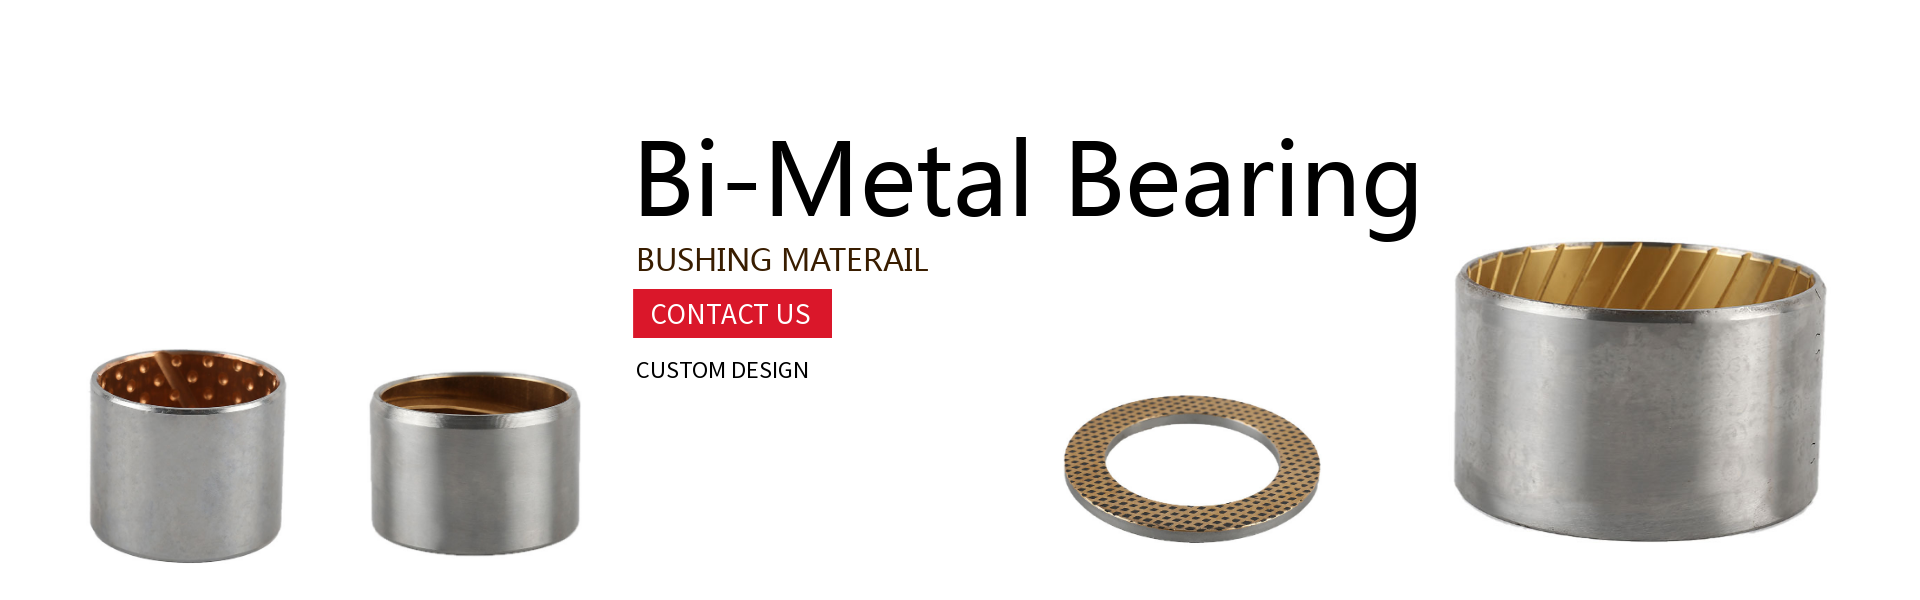 bimetal bearings 